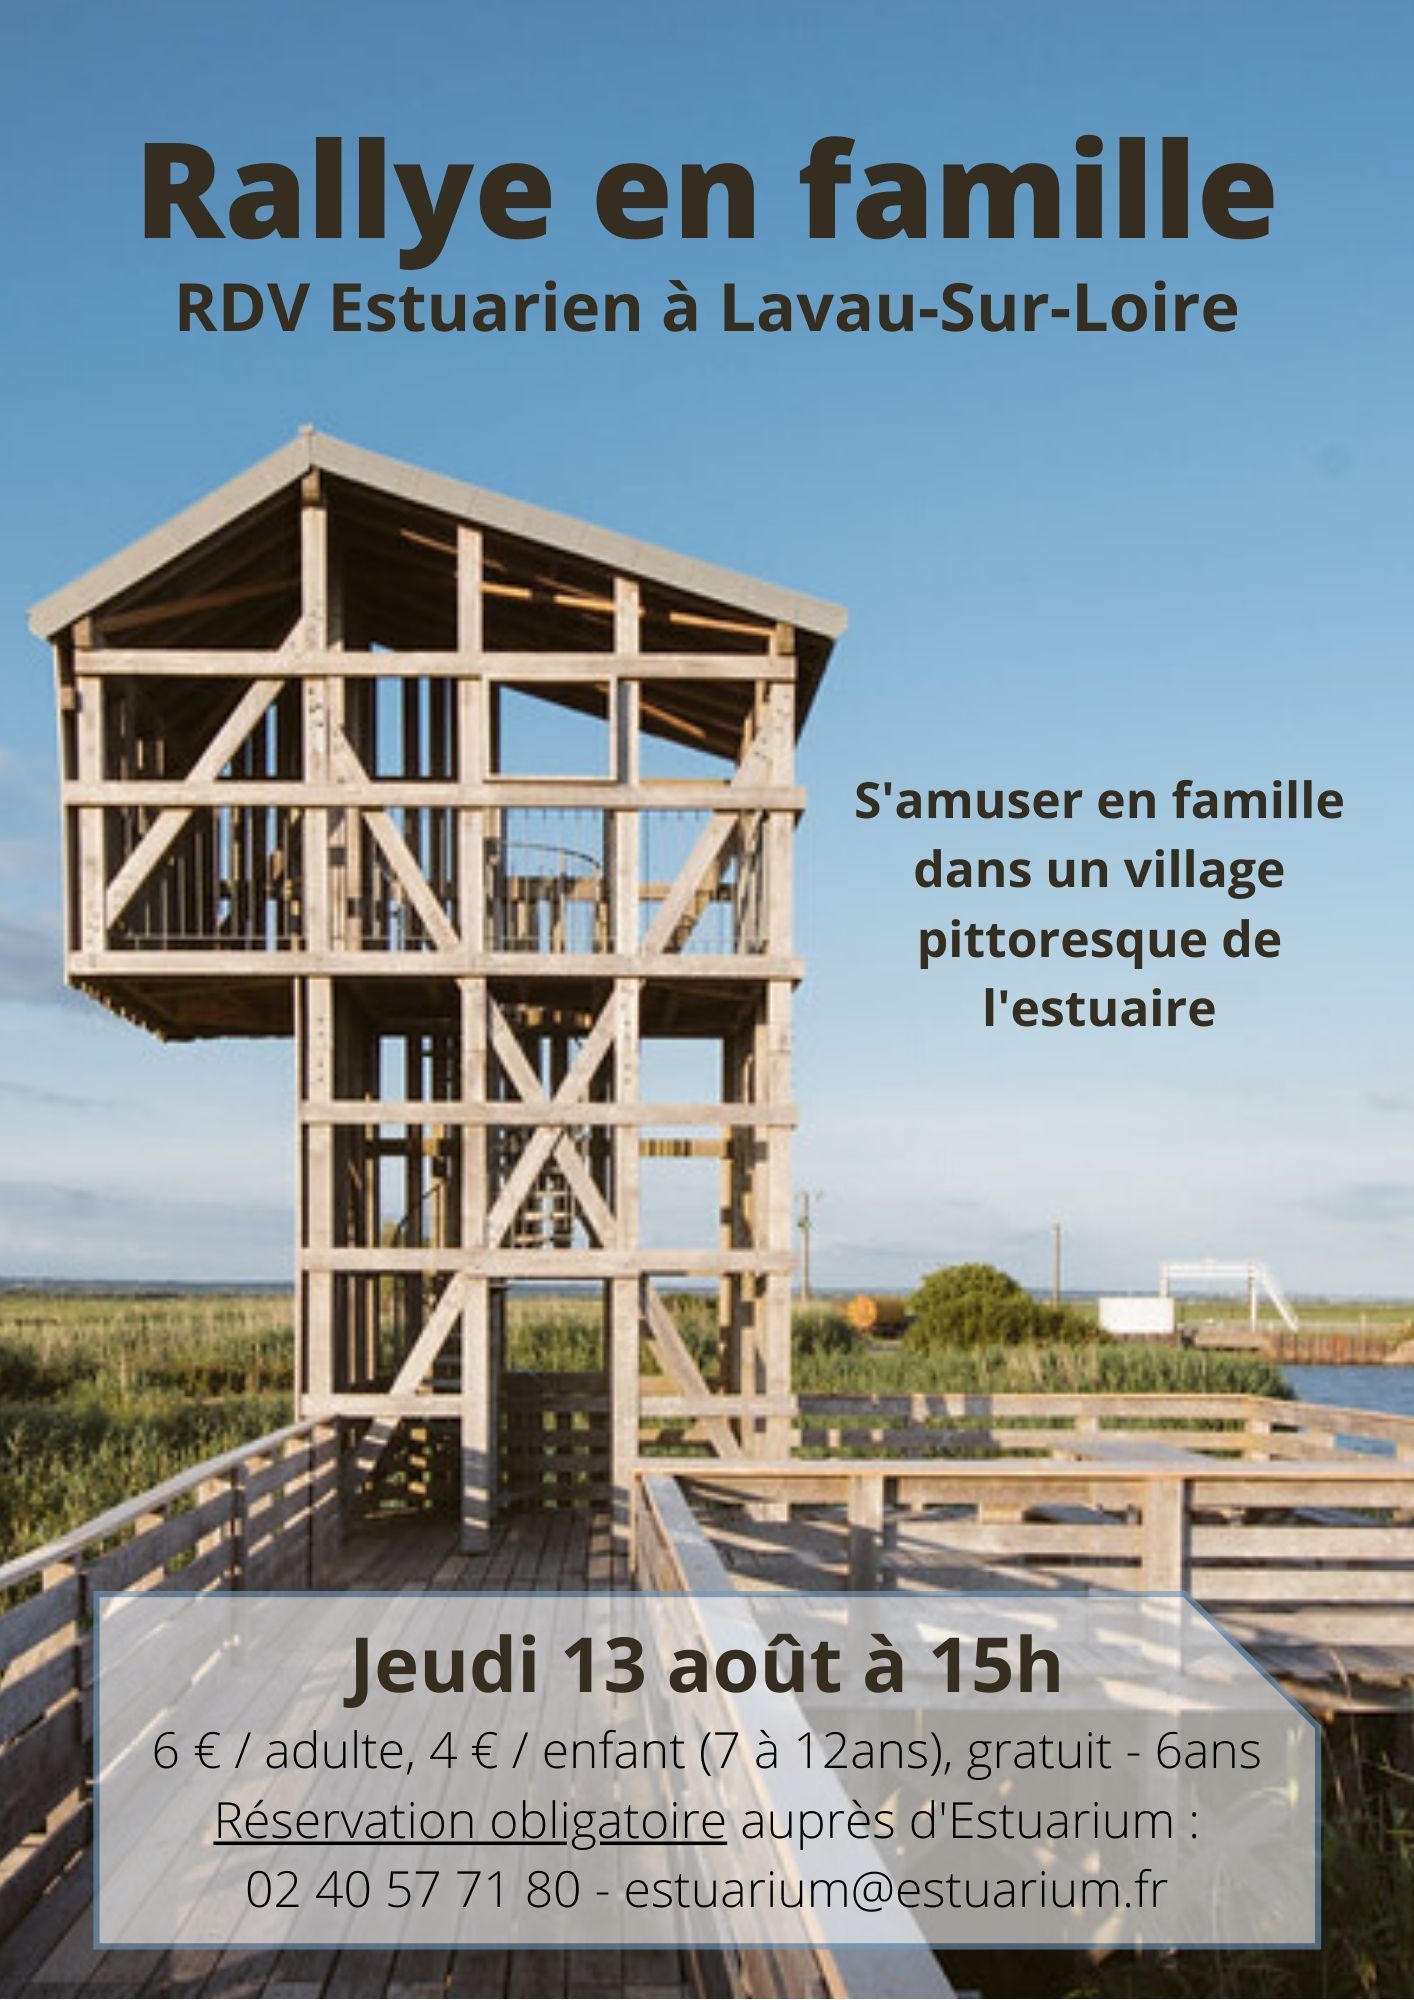 RDV Estuarien aout 2020 - Rallye en famille - LAVAU